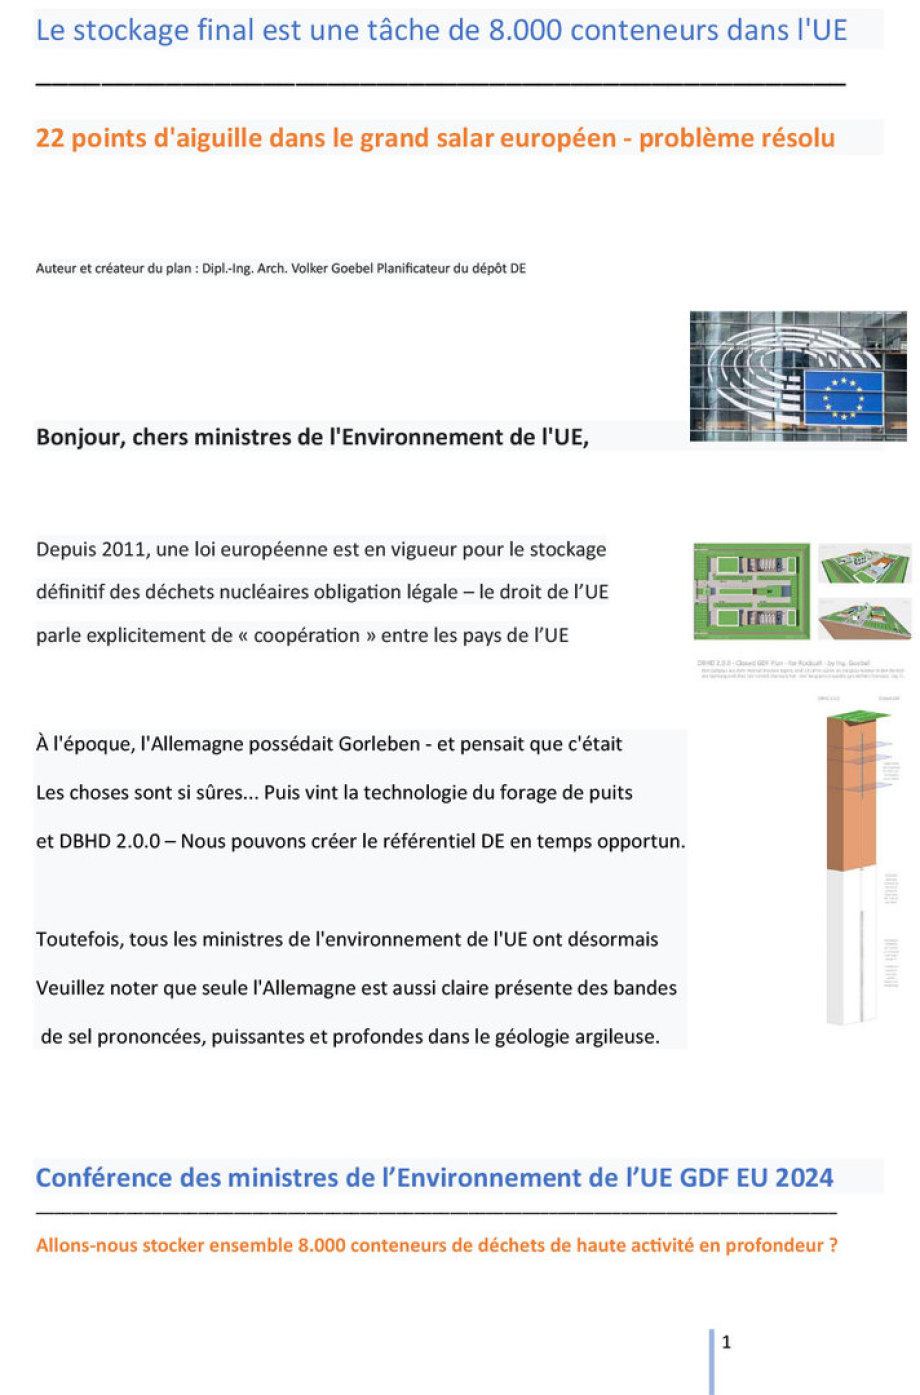 >>> Proposition de conférence ministérielle européenne 2024 sur l'environ-nement et l'énergie concernant le stockage final de 8 000 conteneurs de métaux lourds contenant des résidus hautement radioactifs - Ing. Goebel